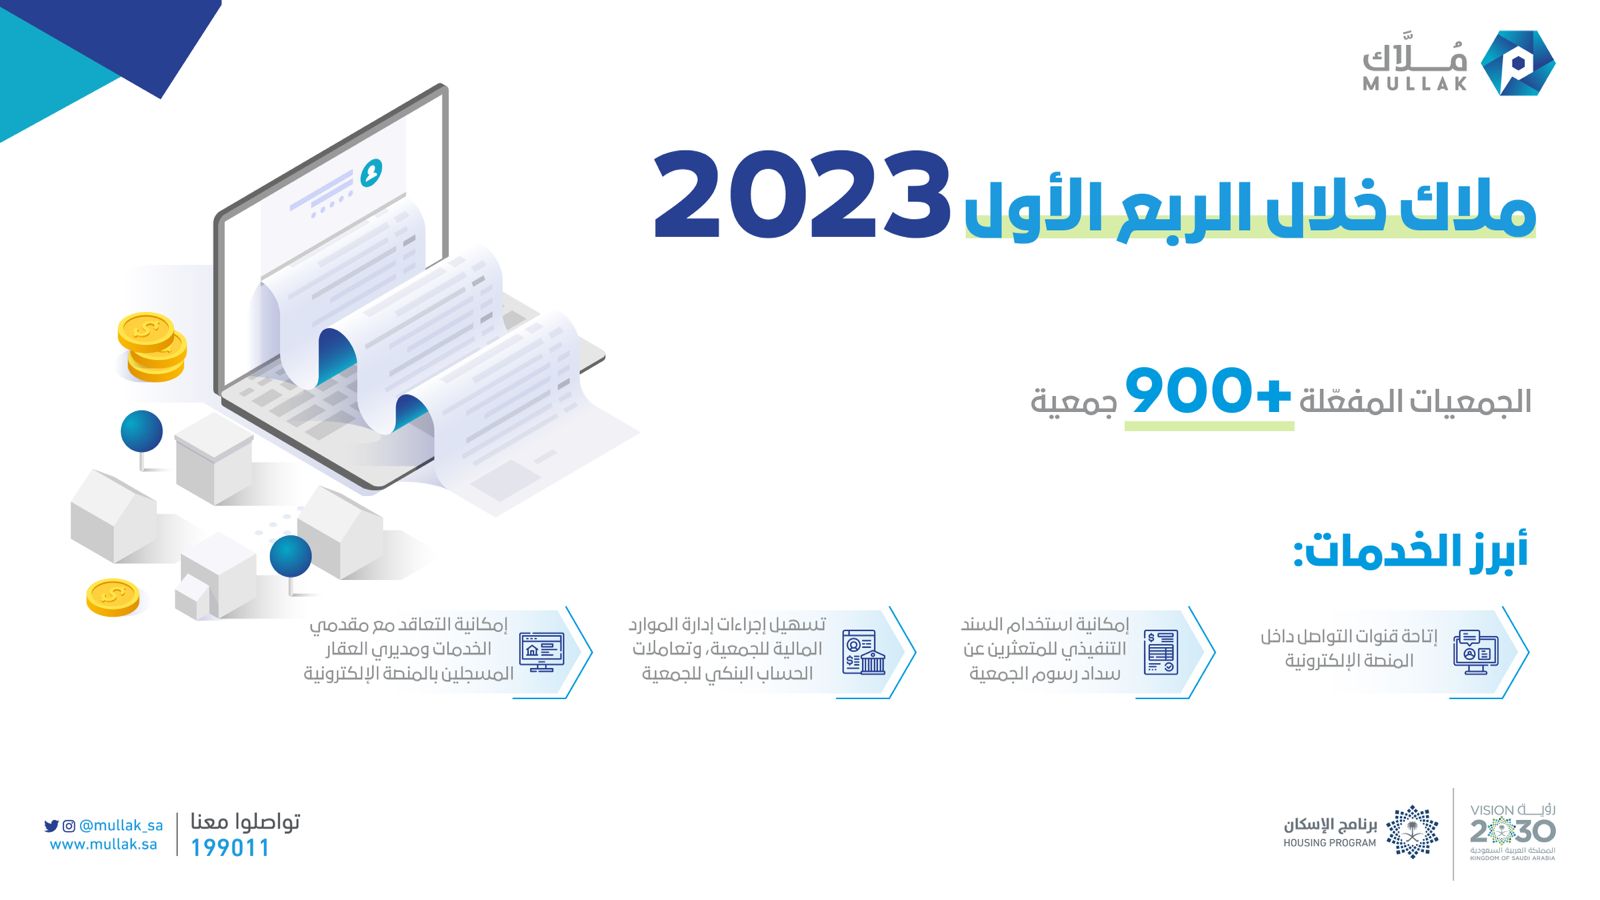 “مُلّاك”: أكثر من 900 جمعية مفعّلة في الربع الأول لعام 2023